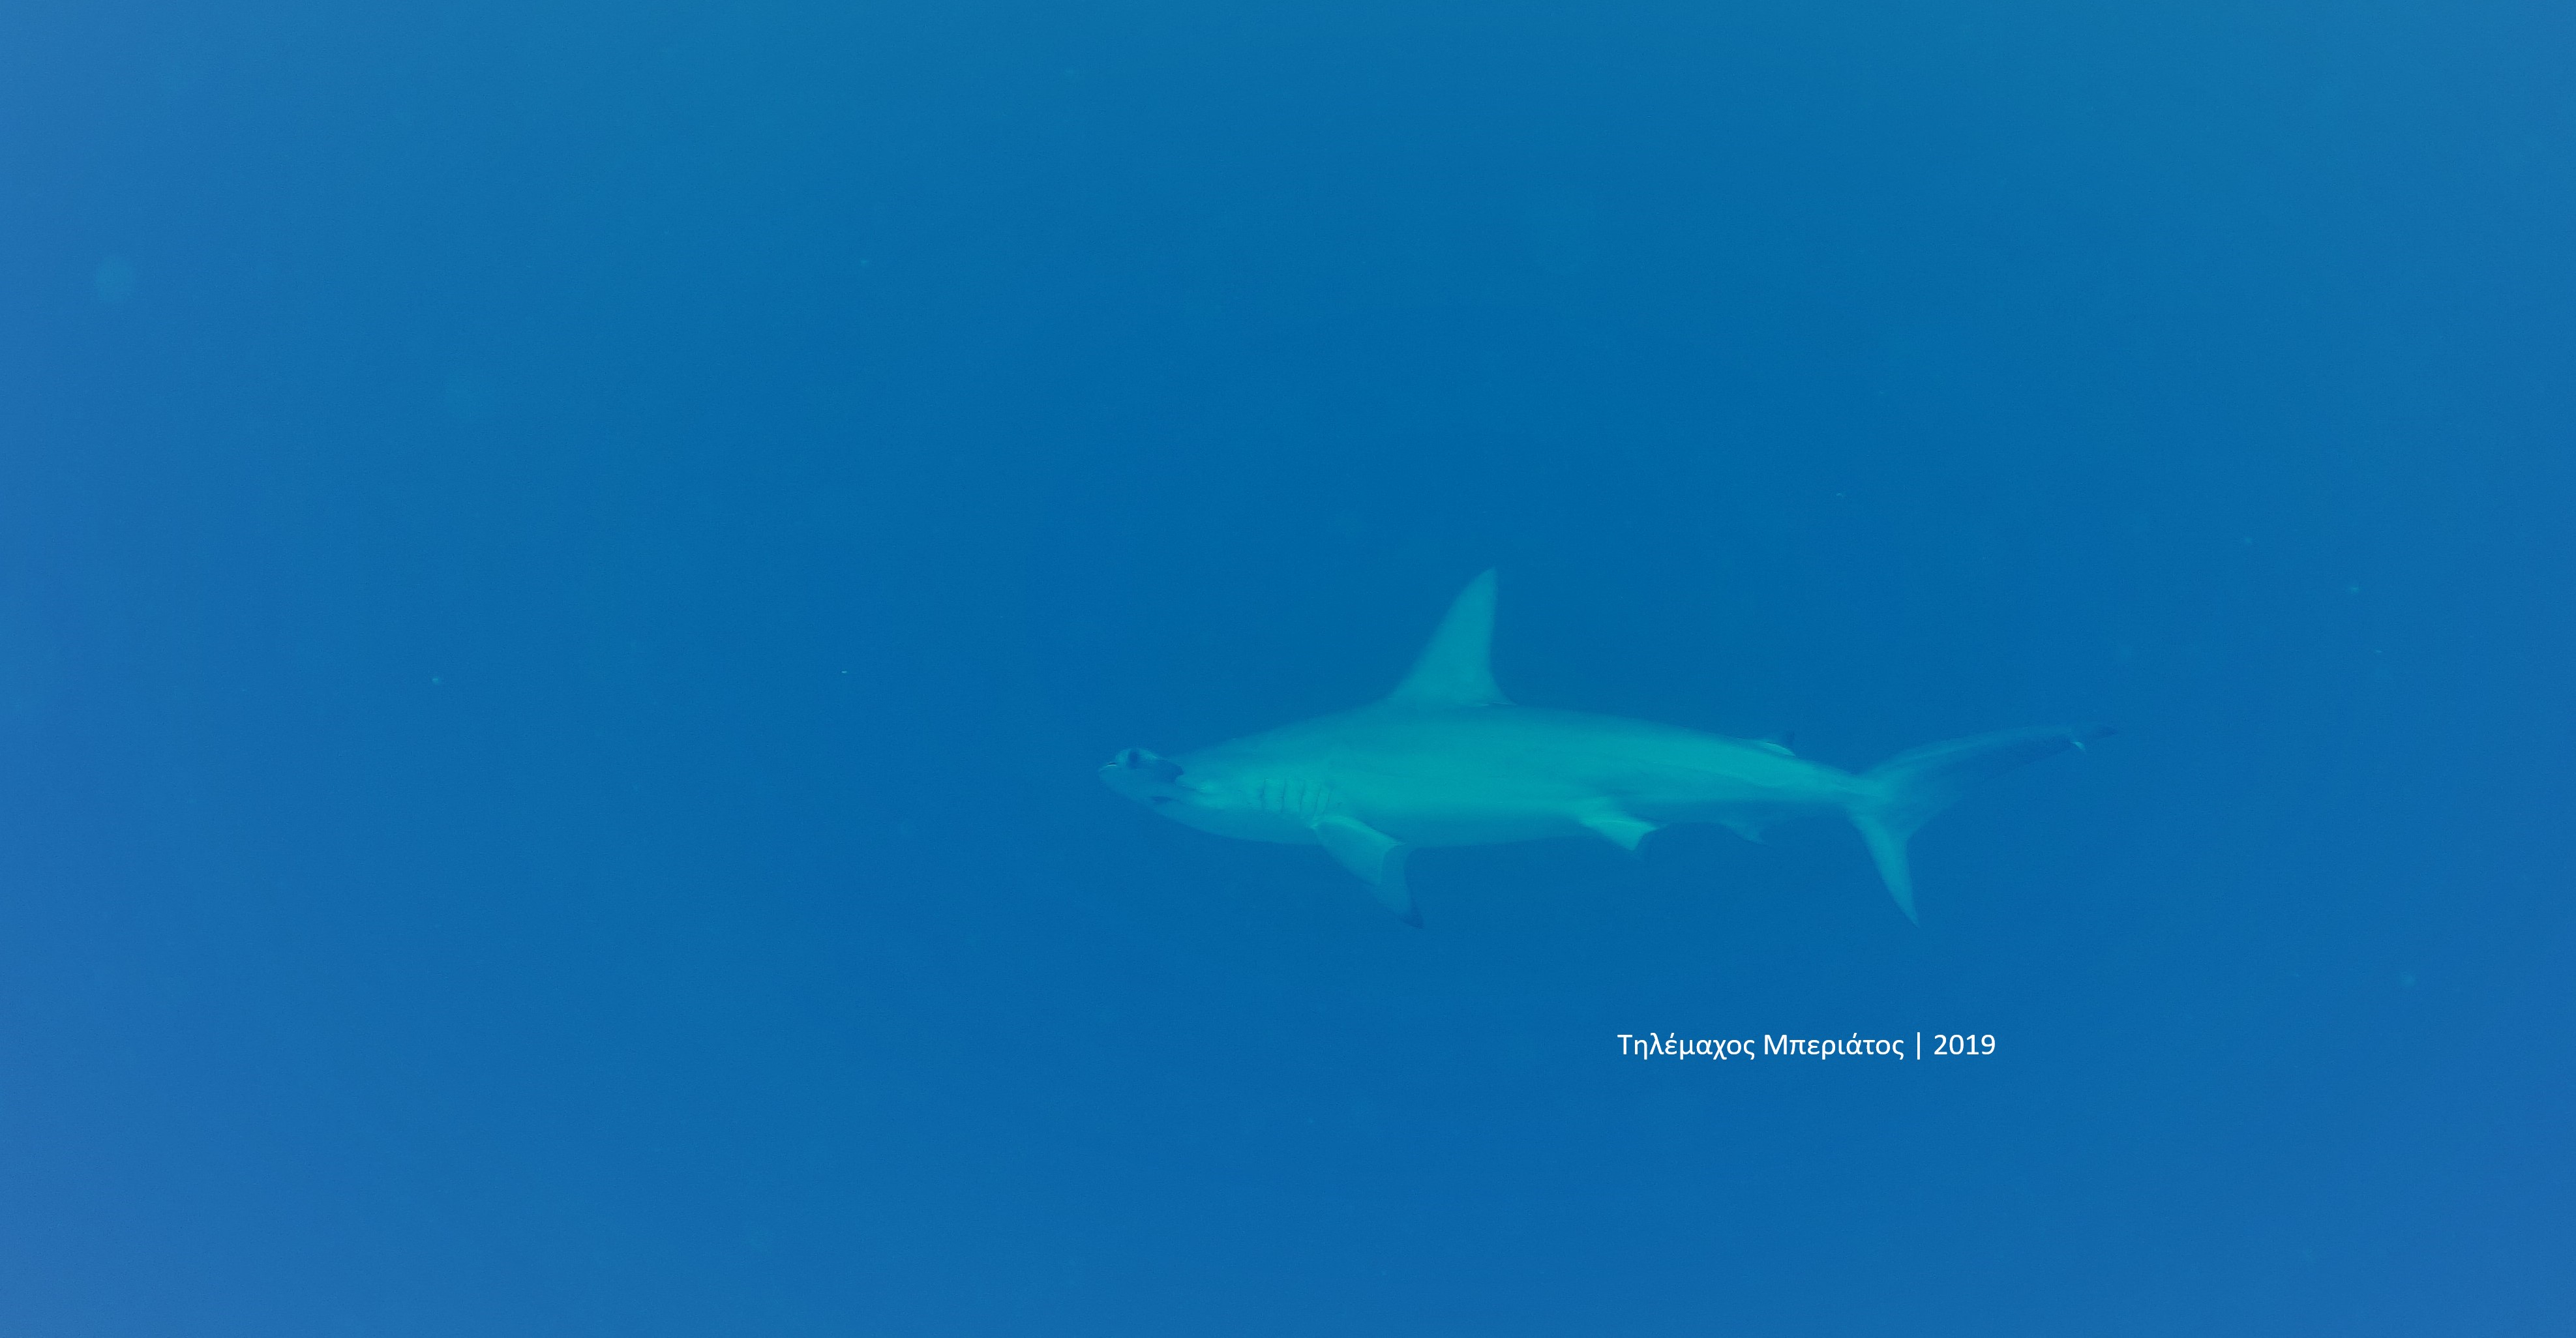 Hammerhead shark Τηλέμαχος Μπεριάτος 2019